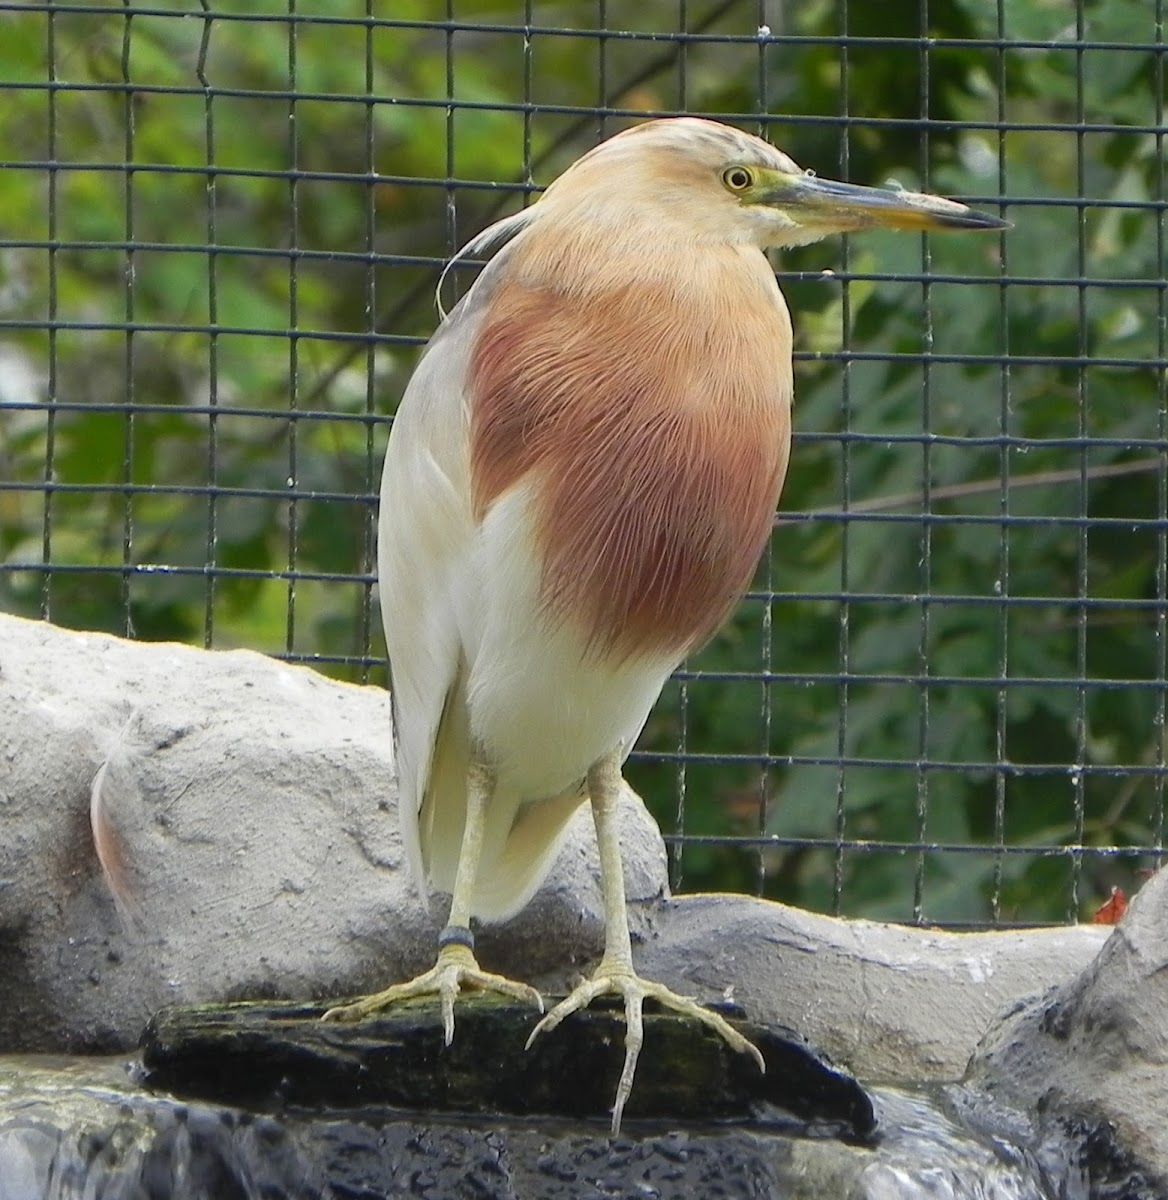 Javan Pond Heron